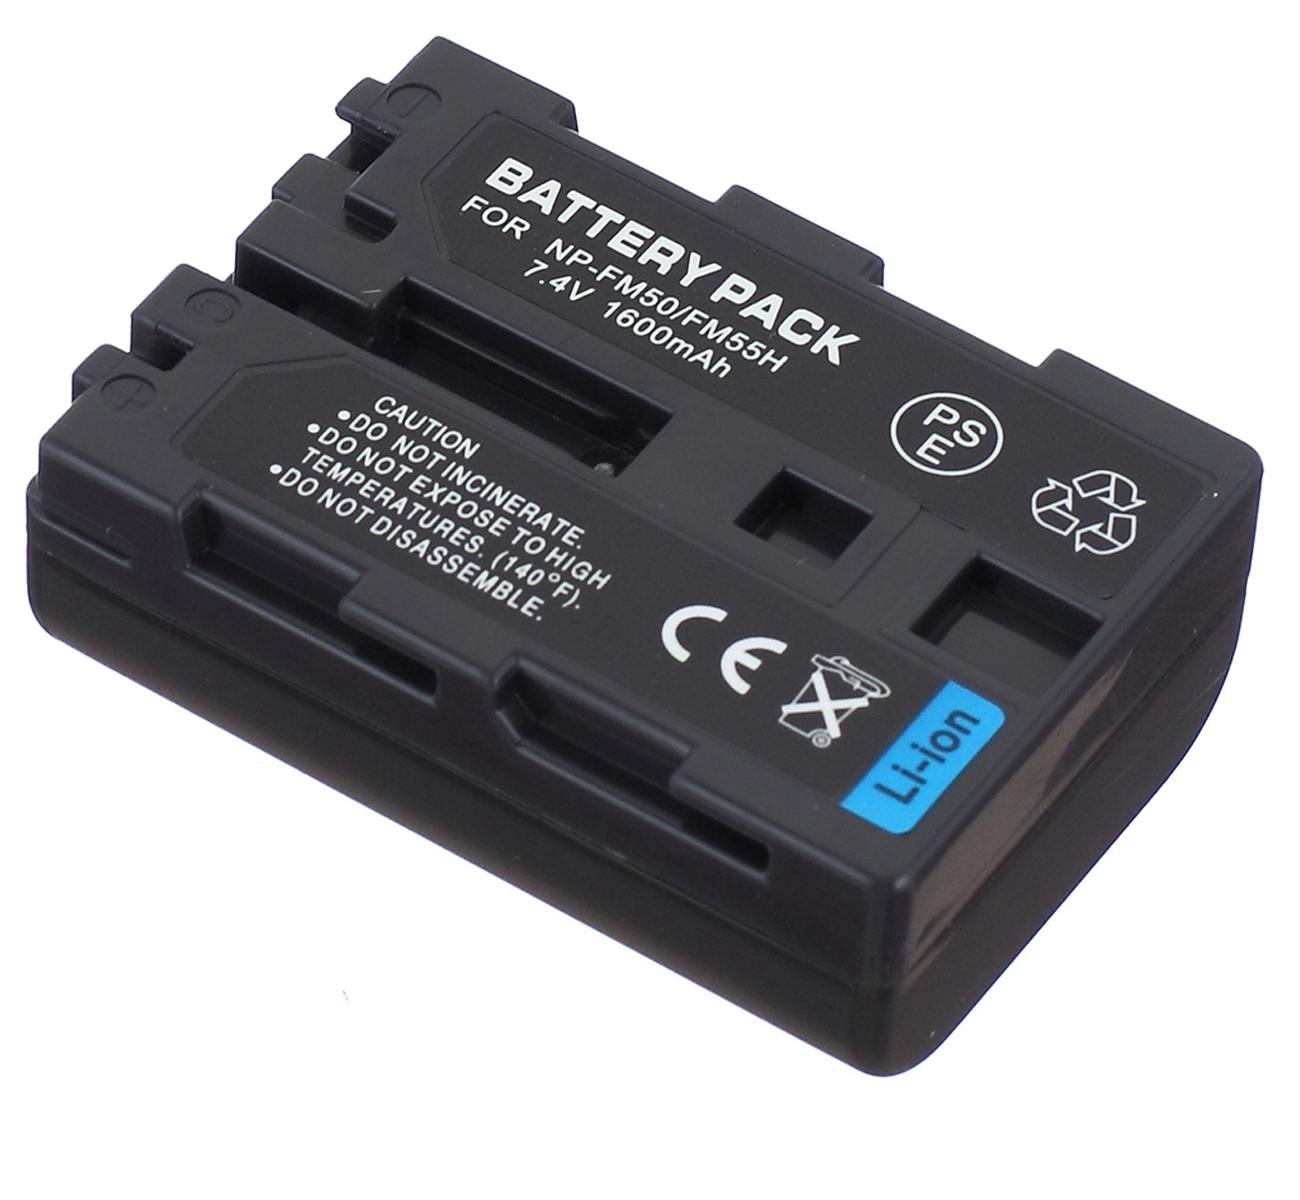 Изображение товара: Батарейный блок для видеокамеры sony DCR-TRV325, DCR-TRV325E, DCR-TRV330E, DCR-TRV340E, DCR-TRV341E, DCR-TRV345E Handycam